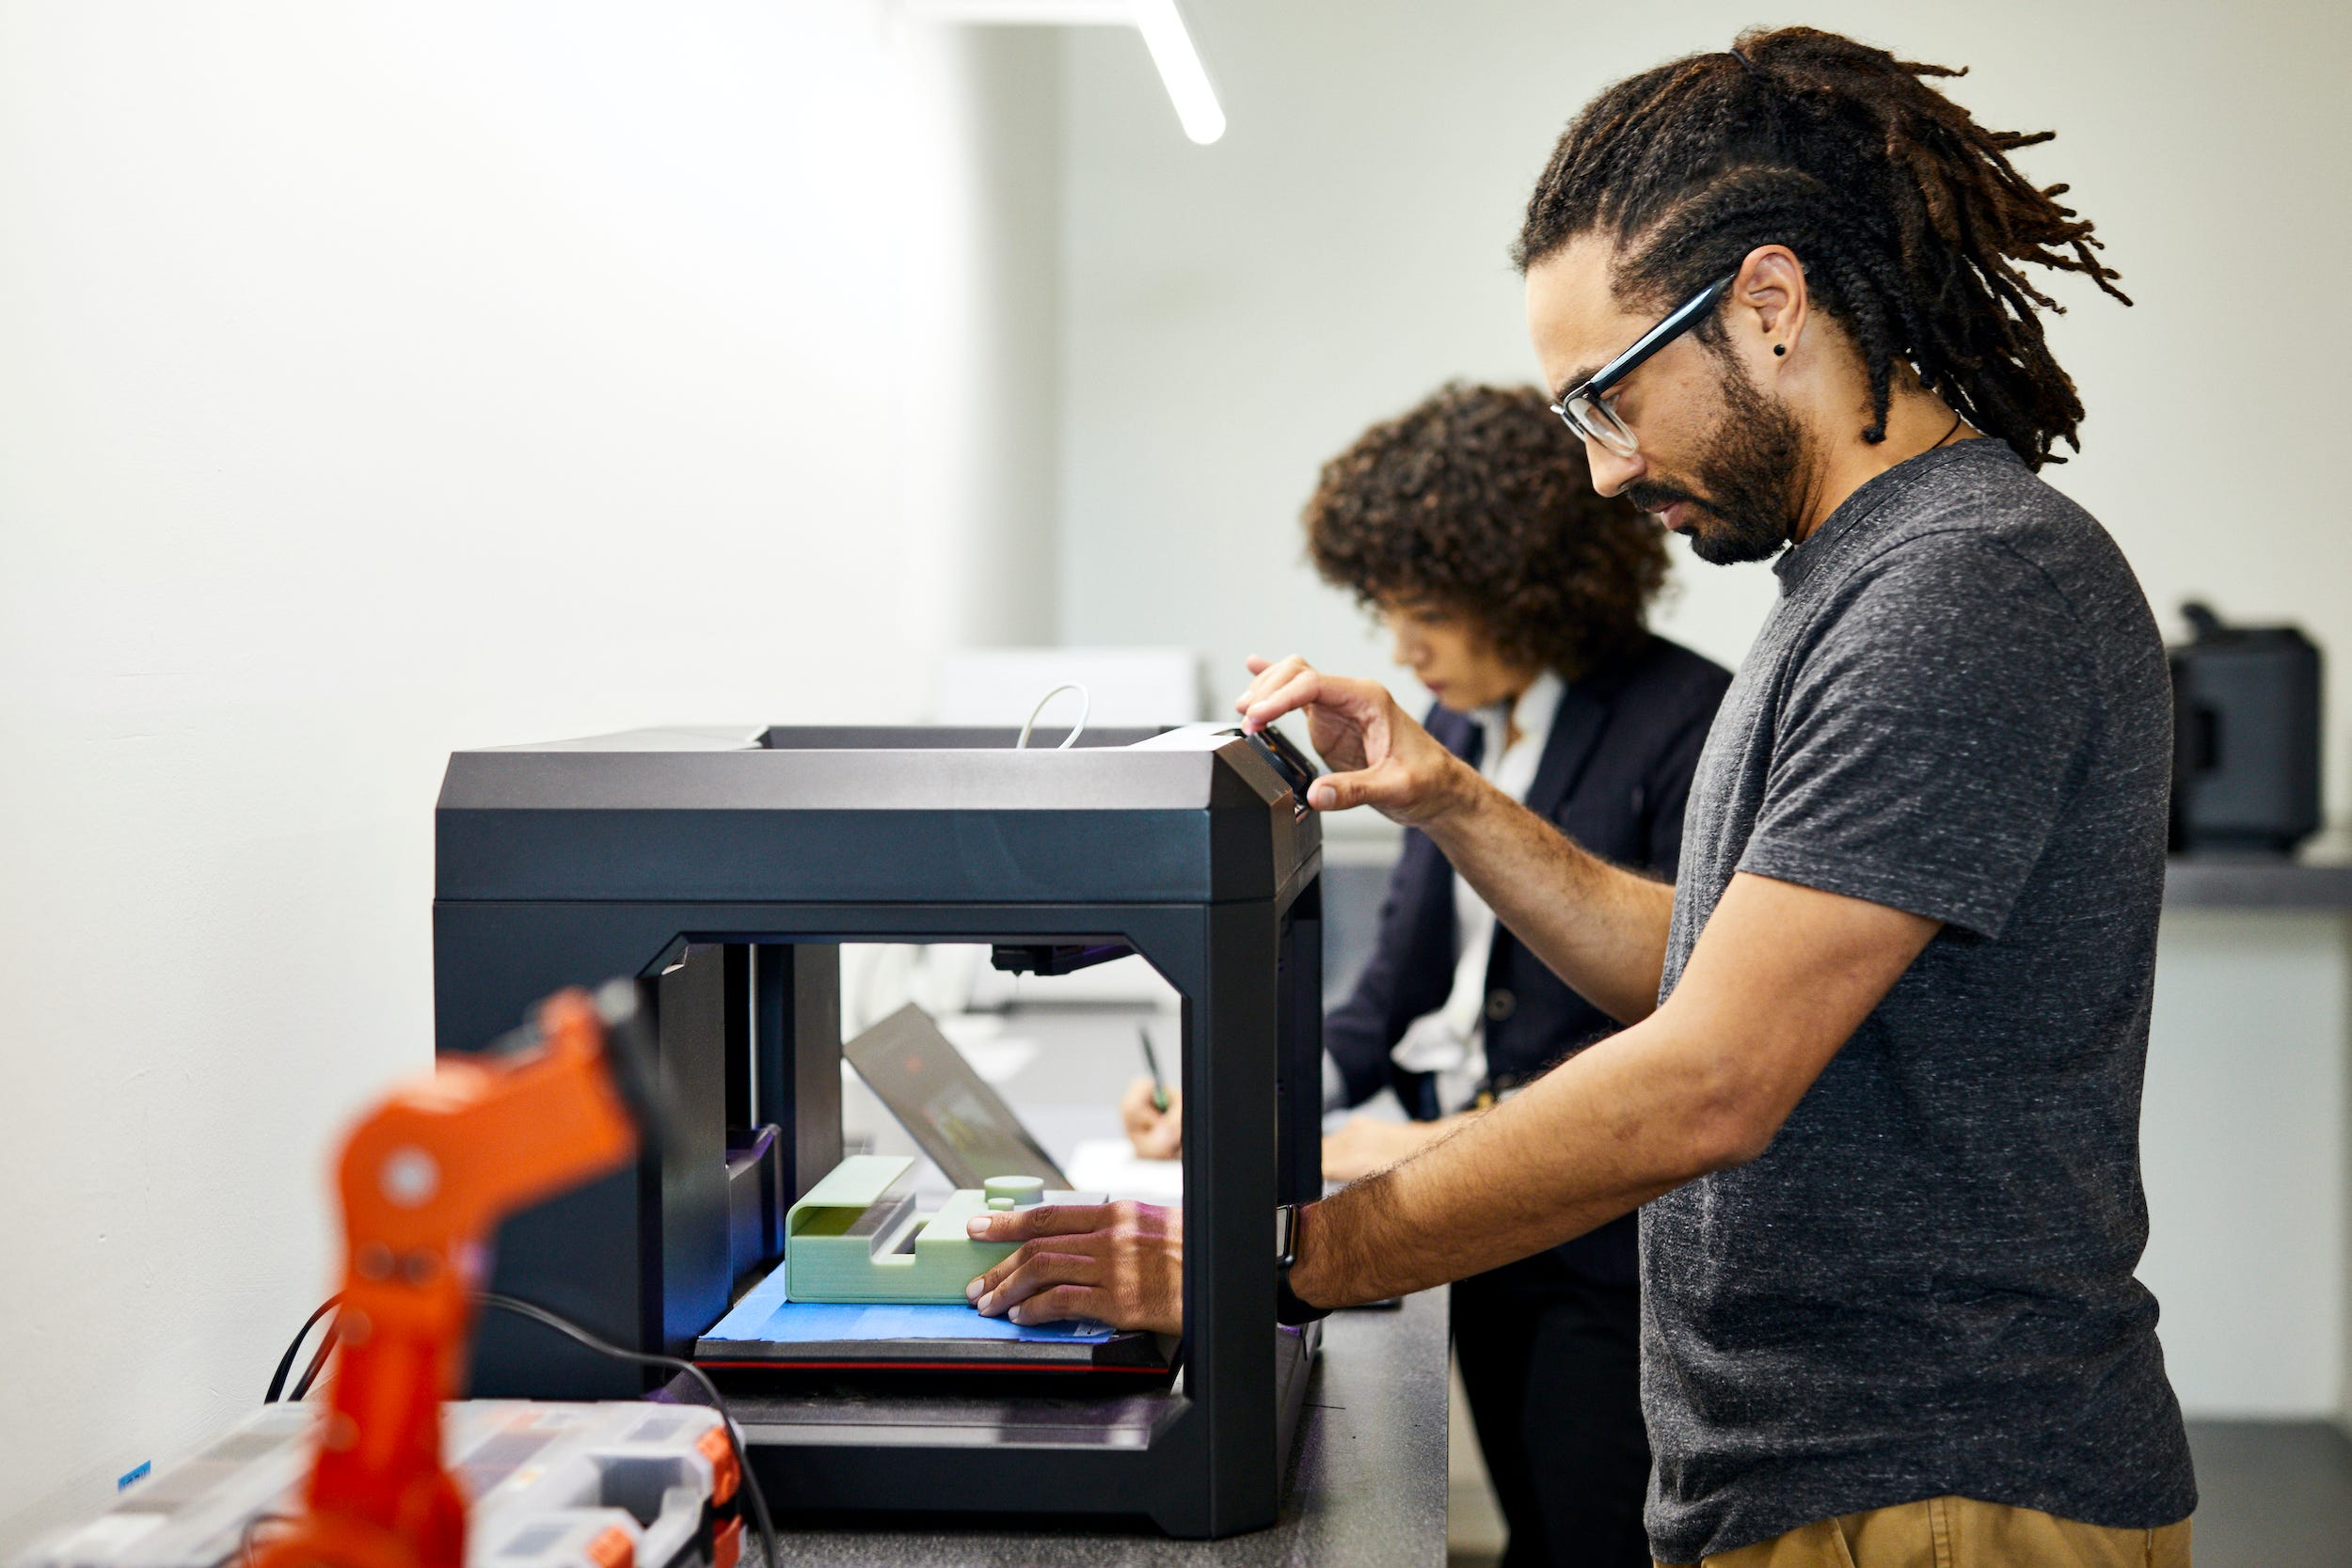 3D printer on office desk